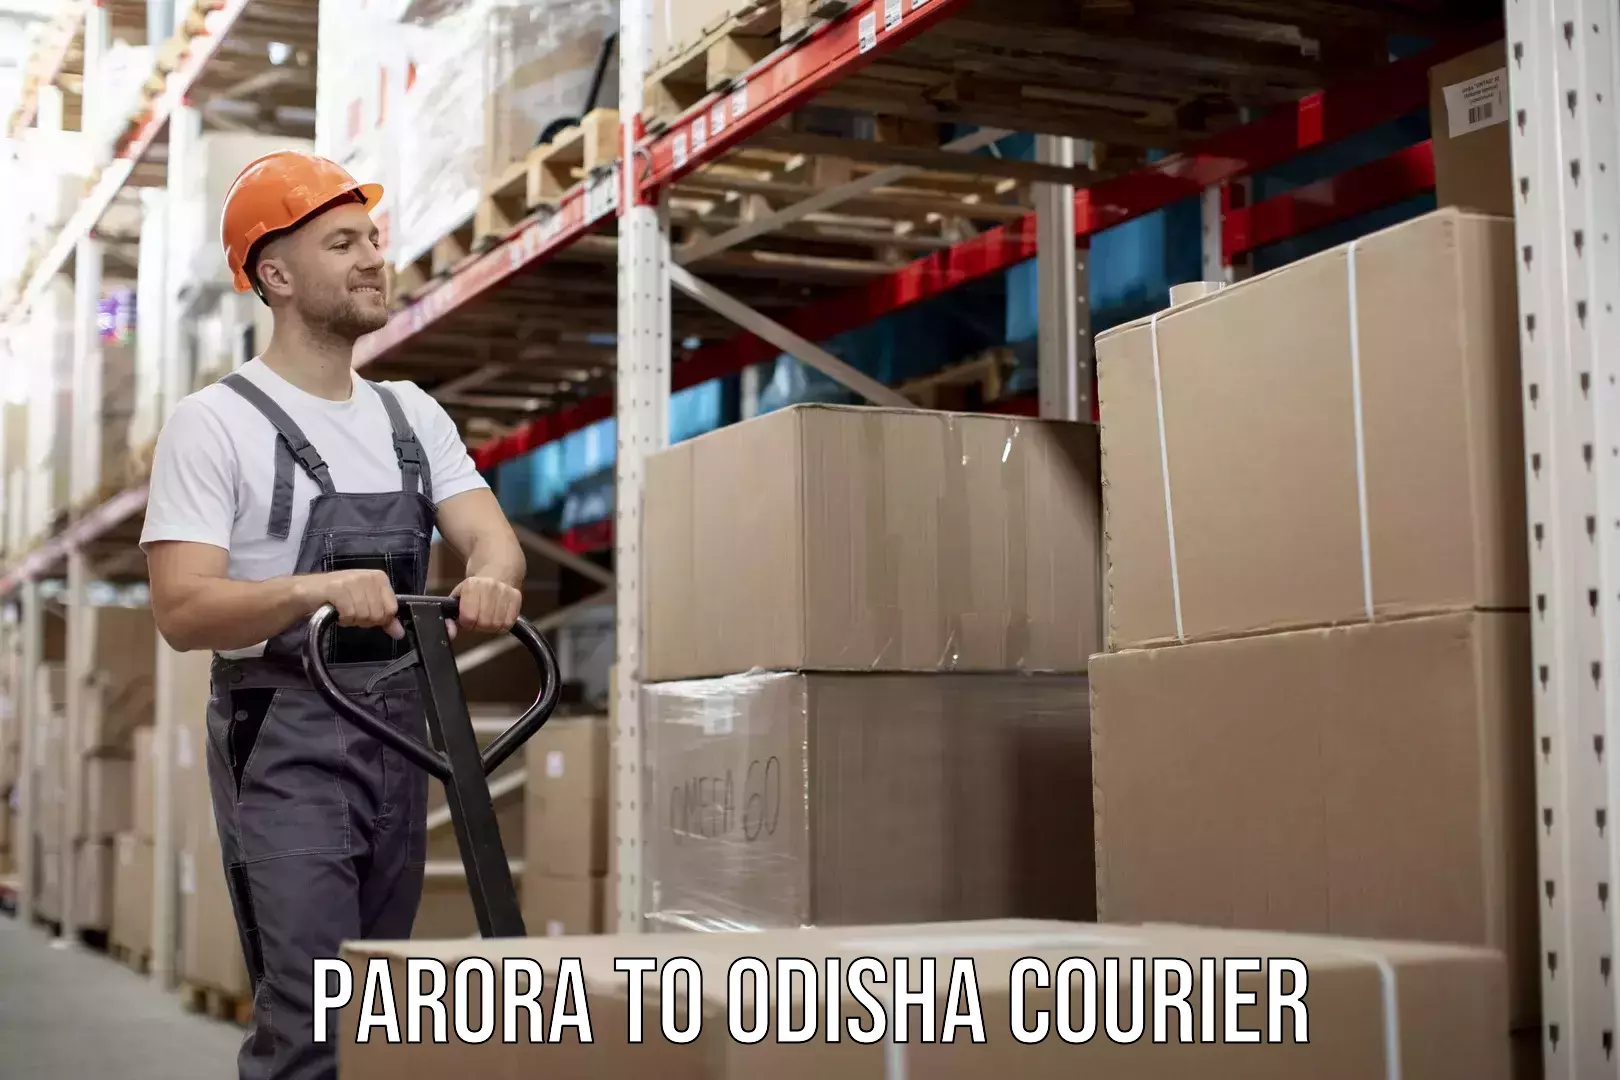 Furniture transport company Parora to Odisha